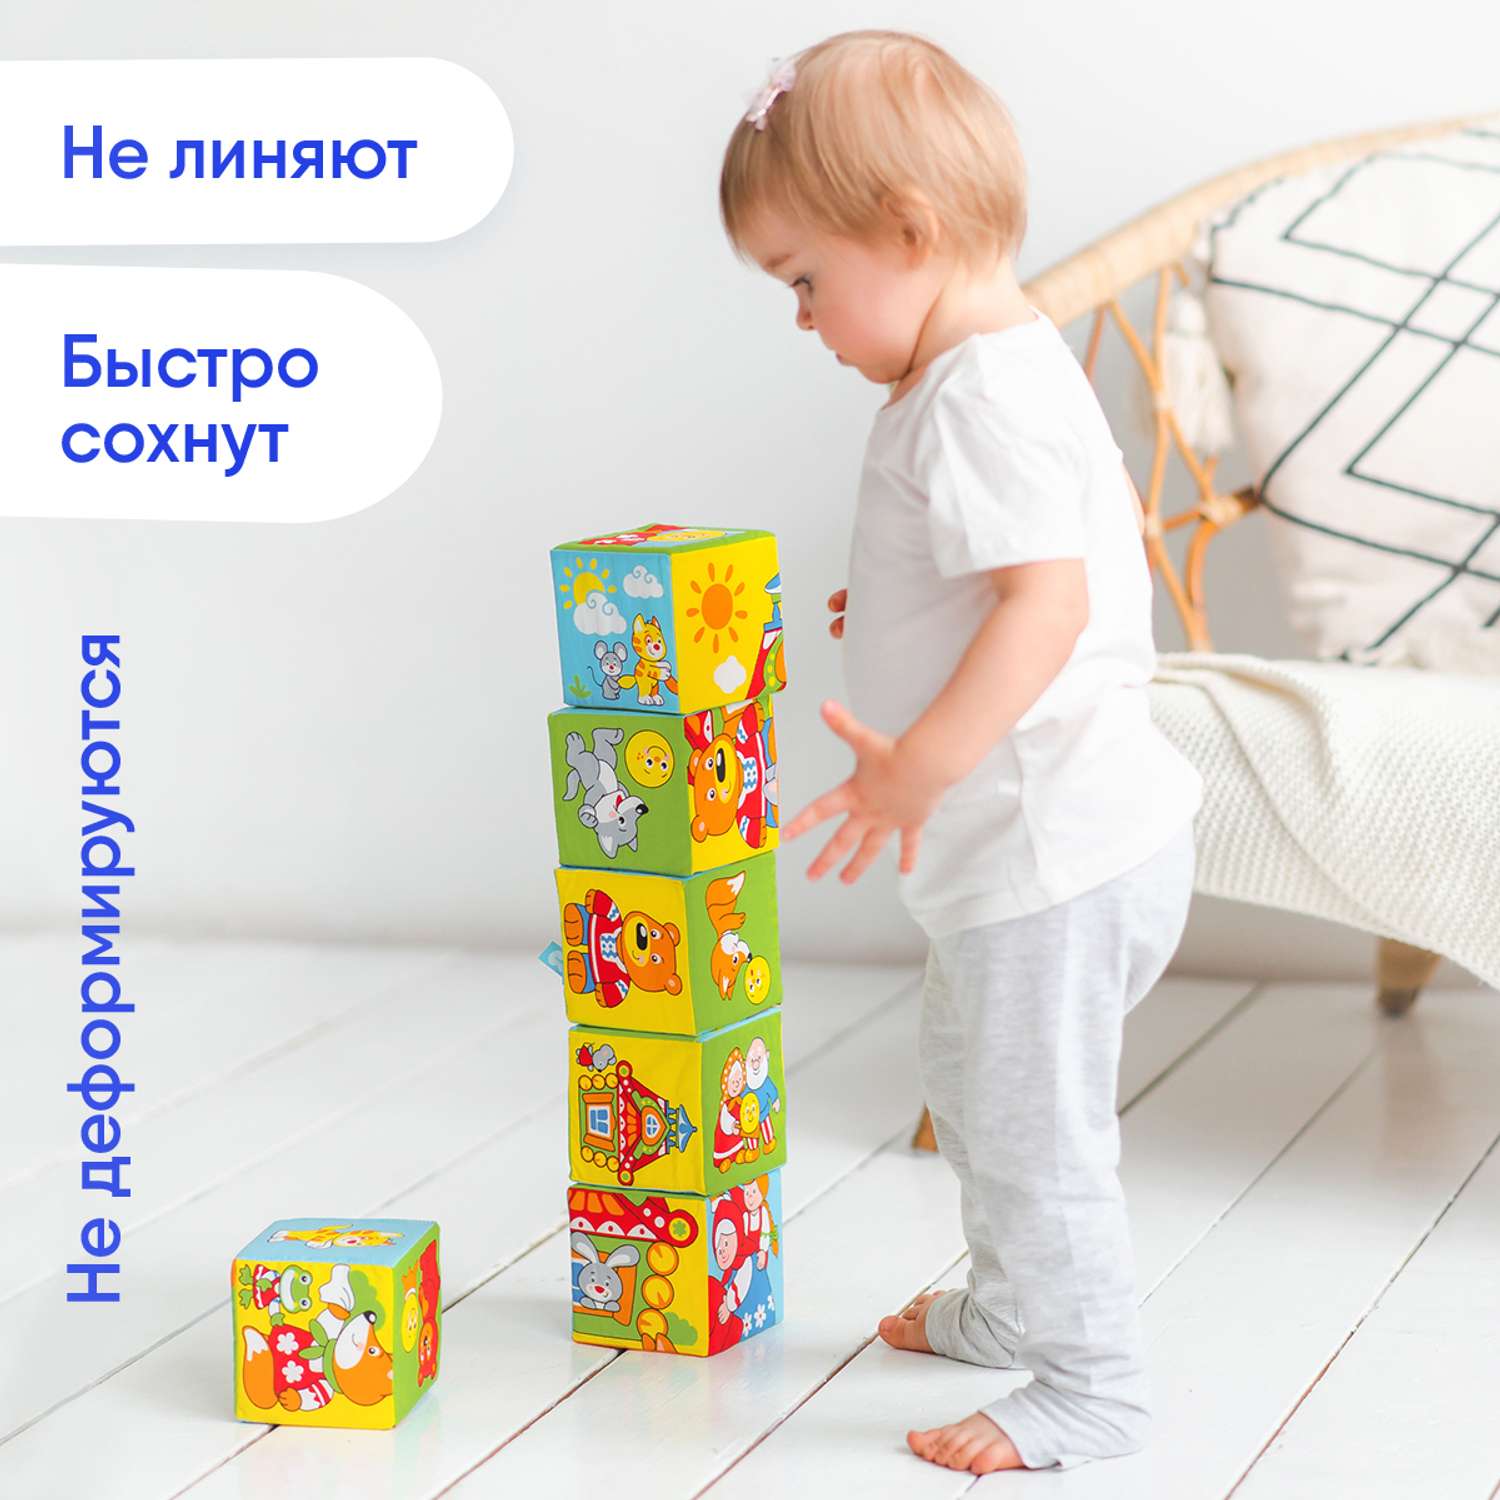 Кубики Мякиши Мягкие детские с буквами развивающие для детей Русские сказки подарок игра развитие детям - фото 4